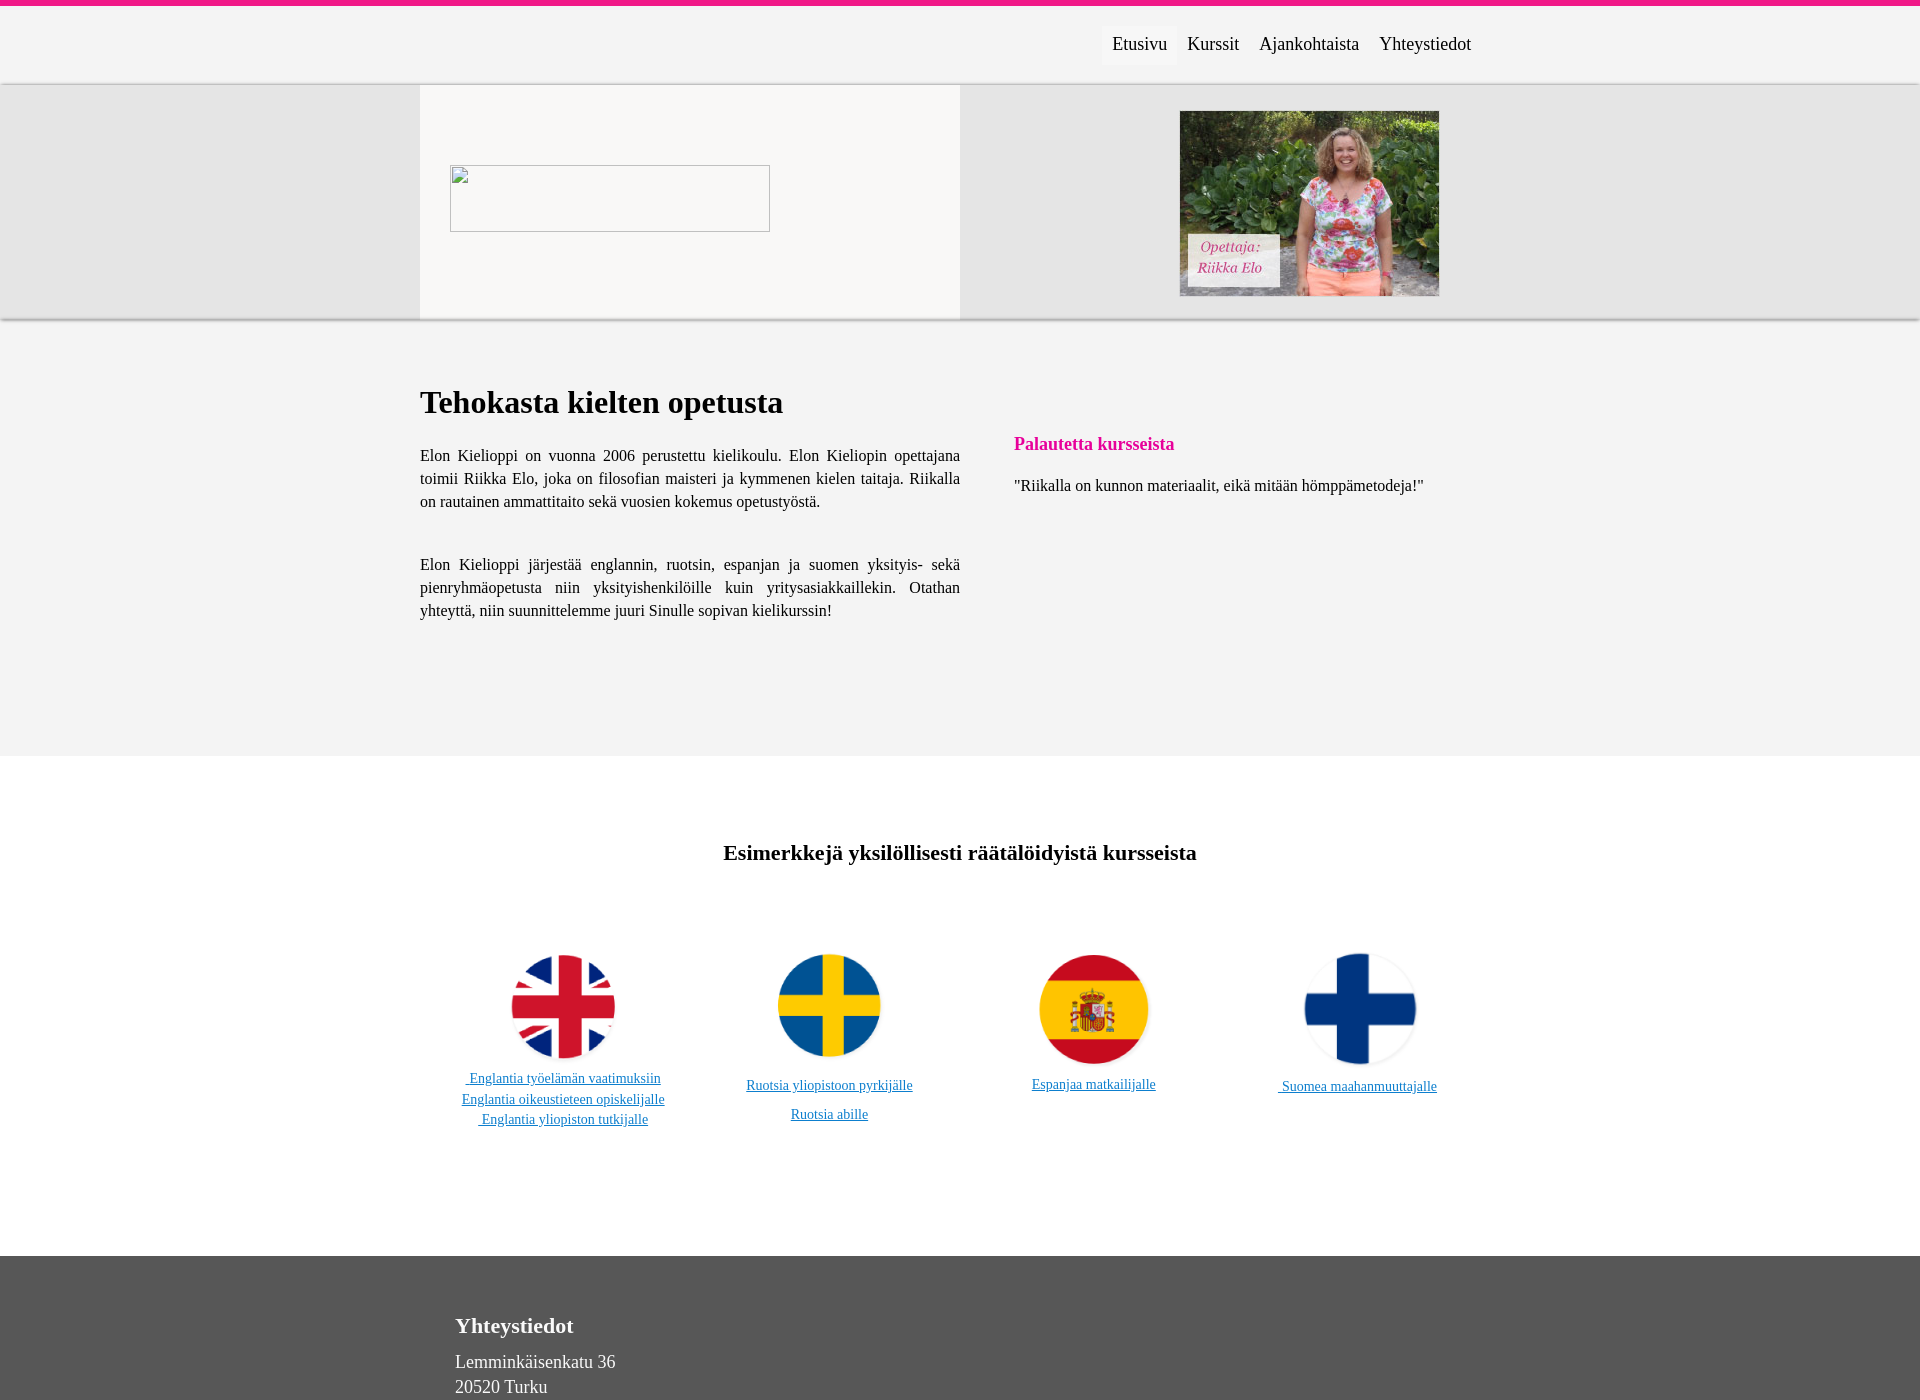 Skärmdump för elonkielioppi.fi